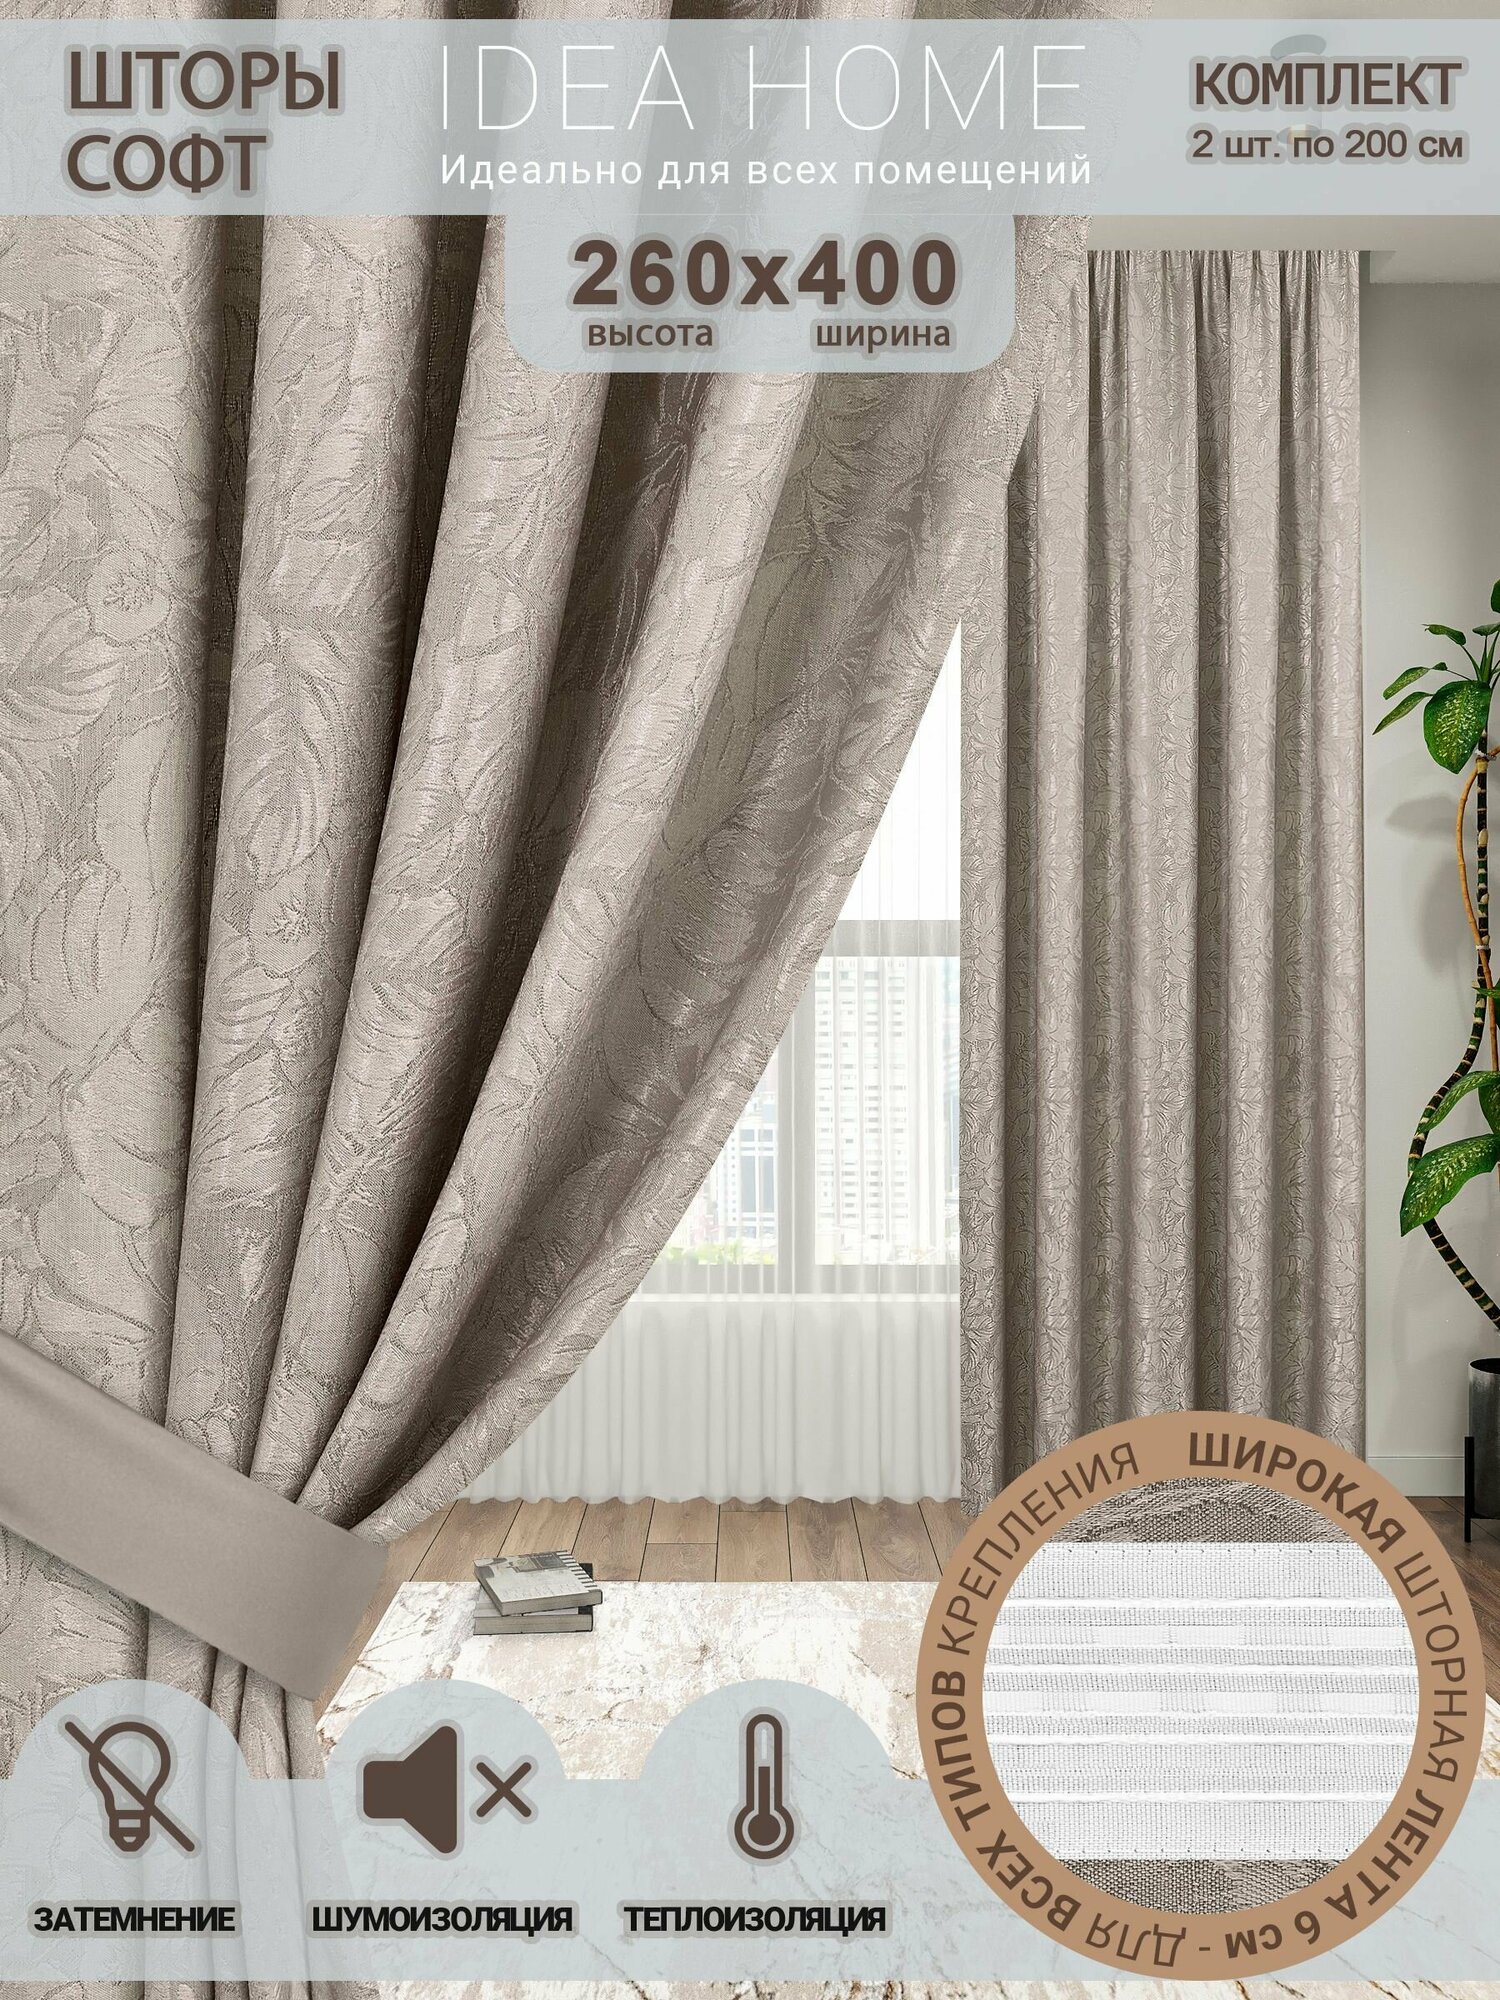 Комплект штор из 2 шт по 200 cм / IDEA HOME светозащитные для комнаты кухни спальни гостиной и дачи 400*250 см  софт серый